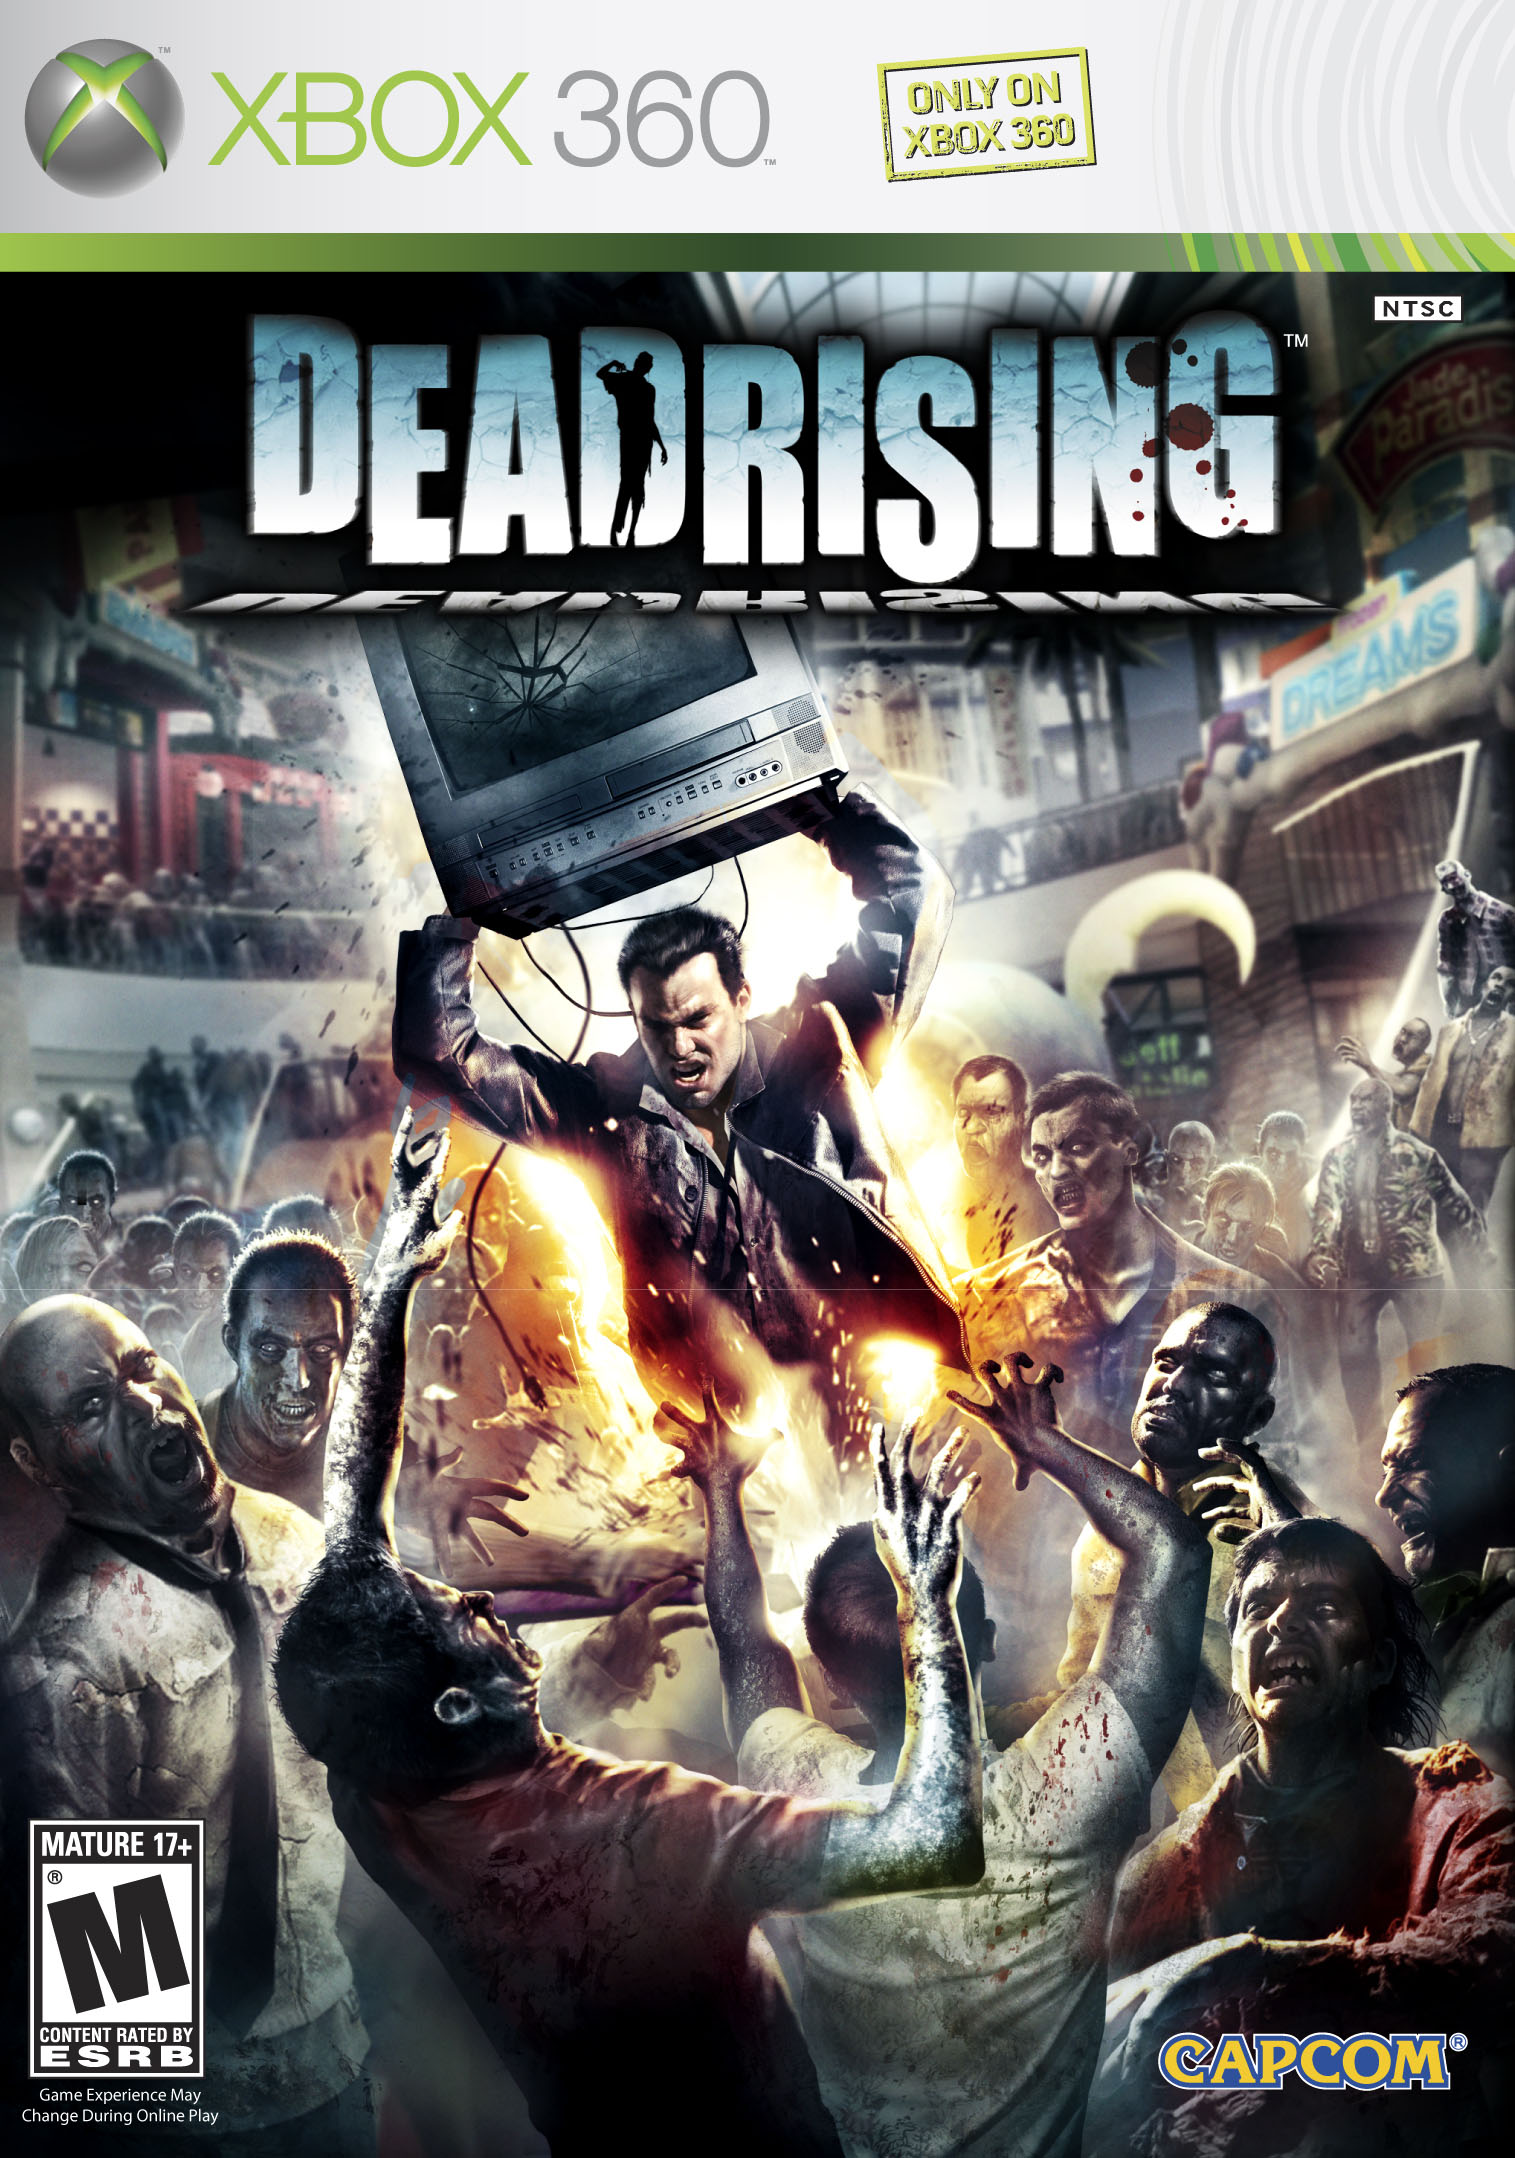 Dead Rising [Xbox 360, английская версия]